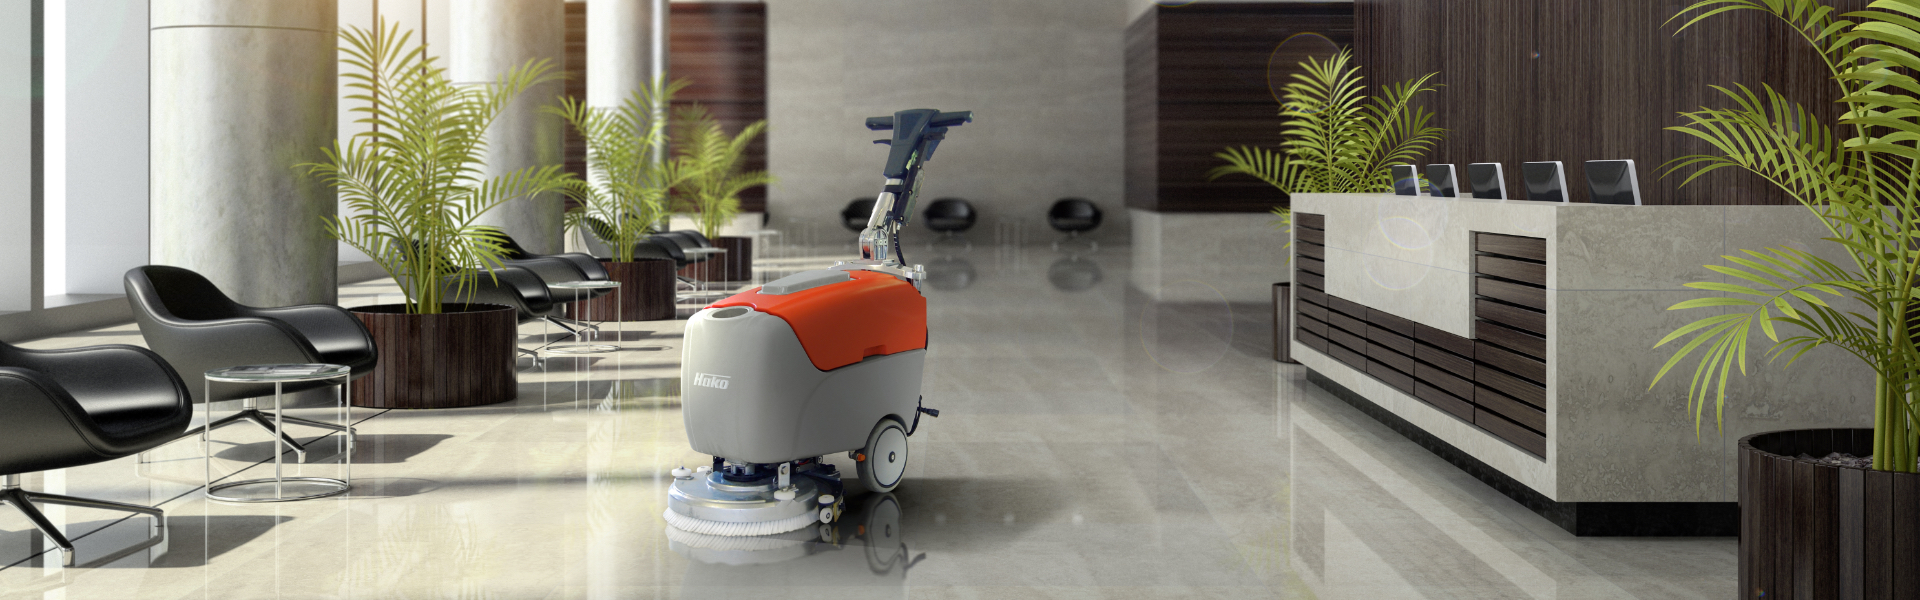 kompaktný čistiaci stroj na podlahy ktorý je vhodný na čistenie menších plôch